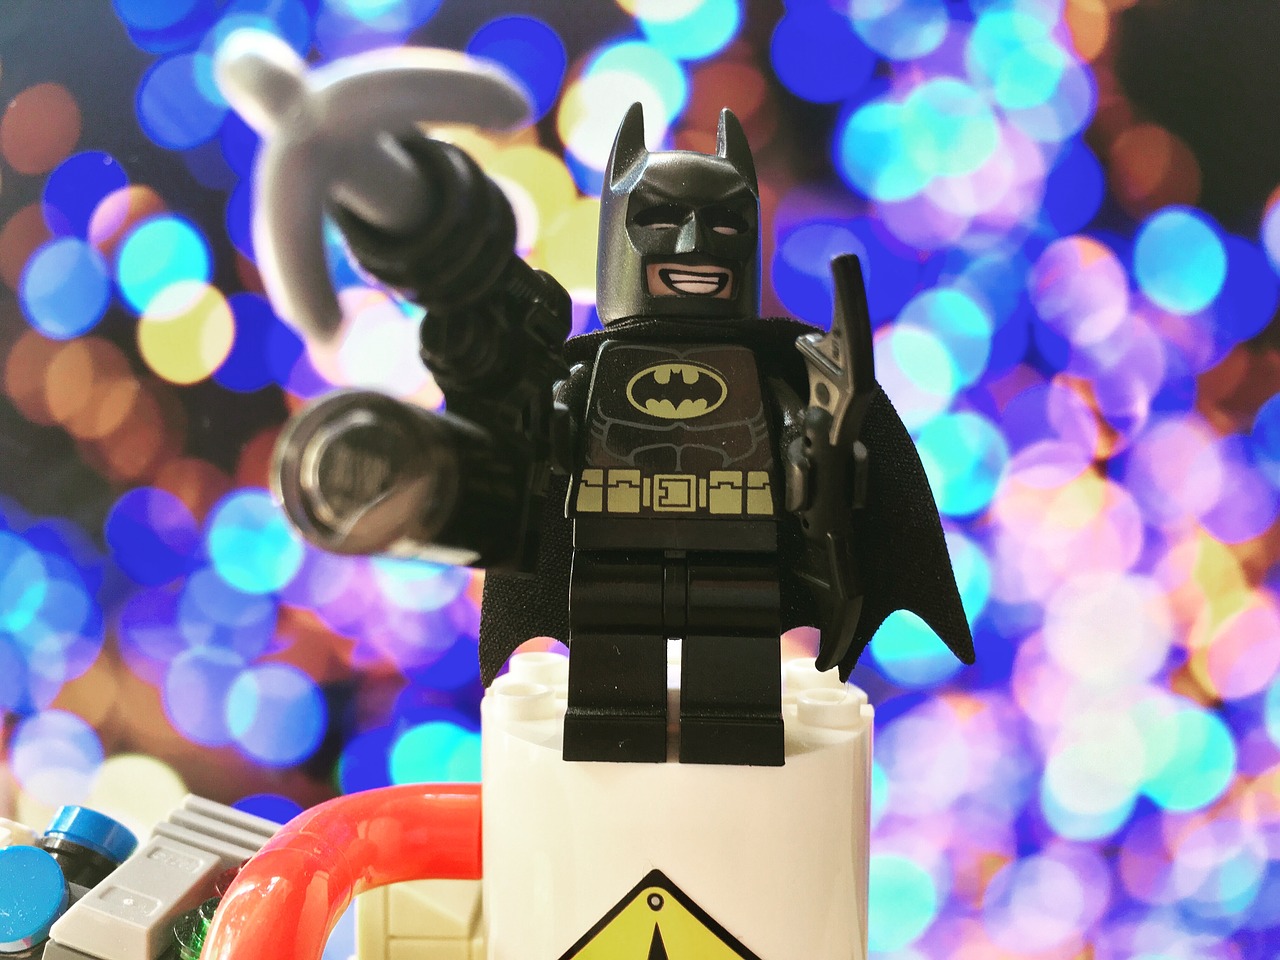 batman lego toys free photo